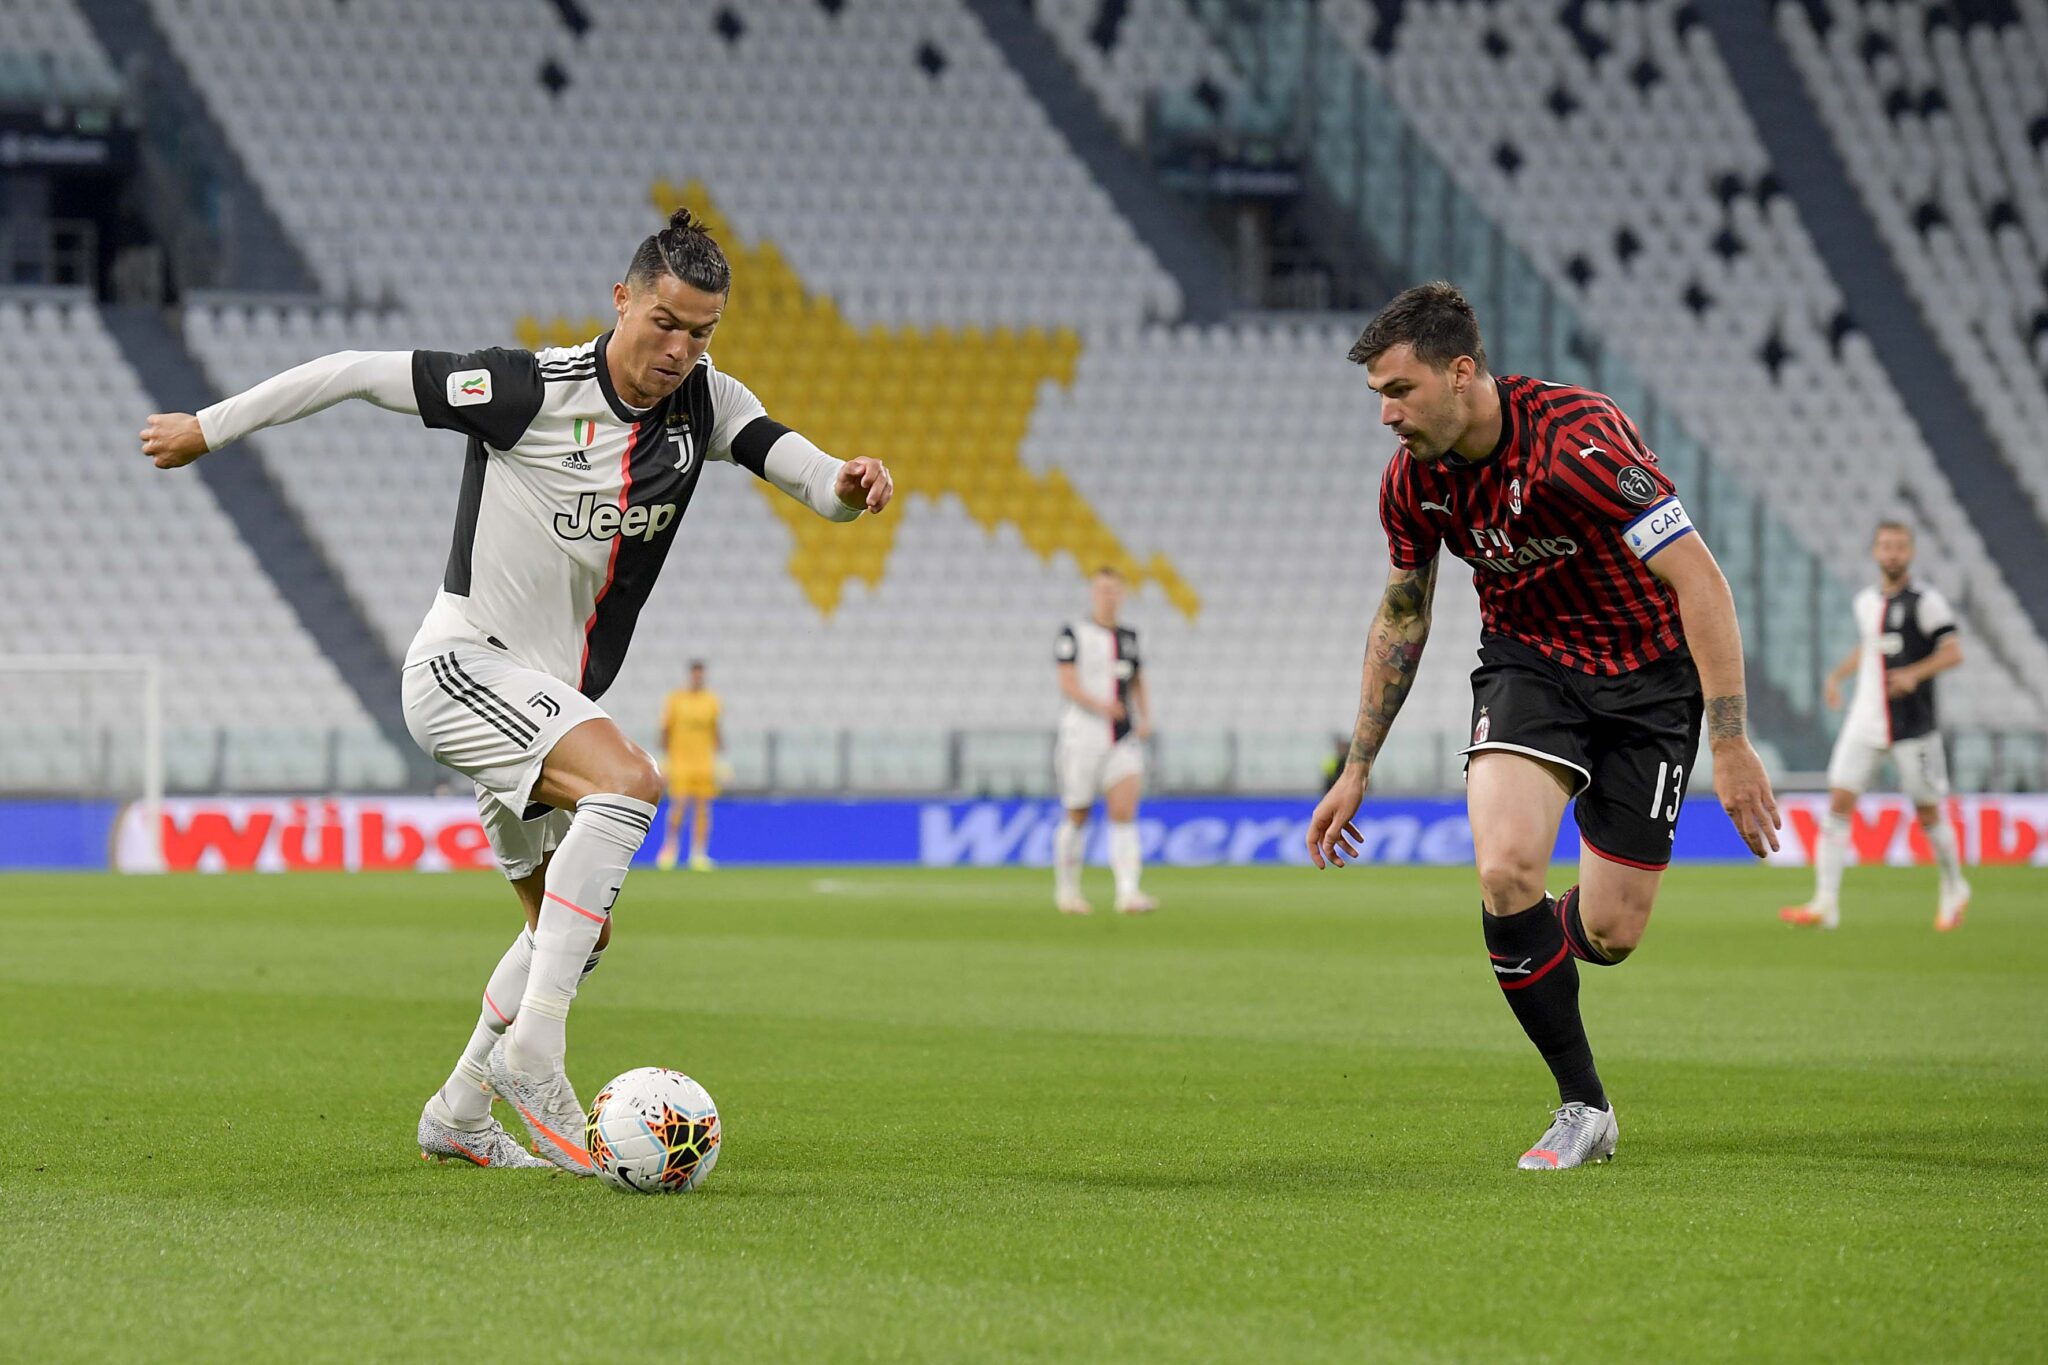 Cristiano intenta superar a Romagnoli. Foto Juventus